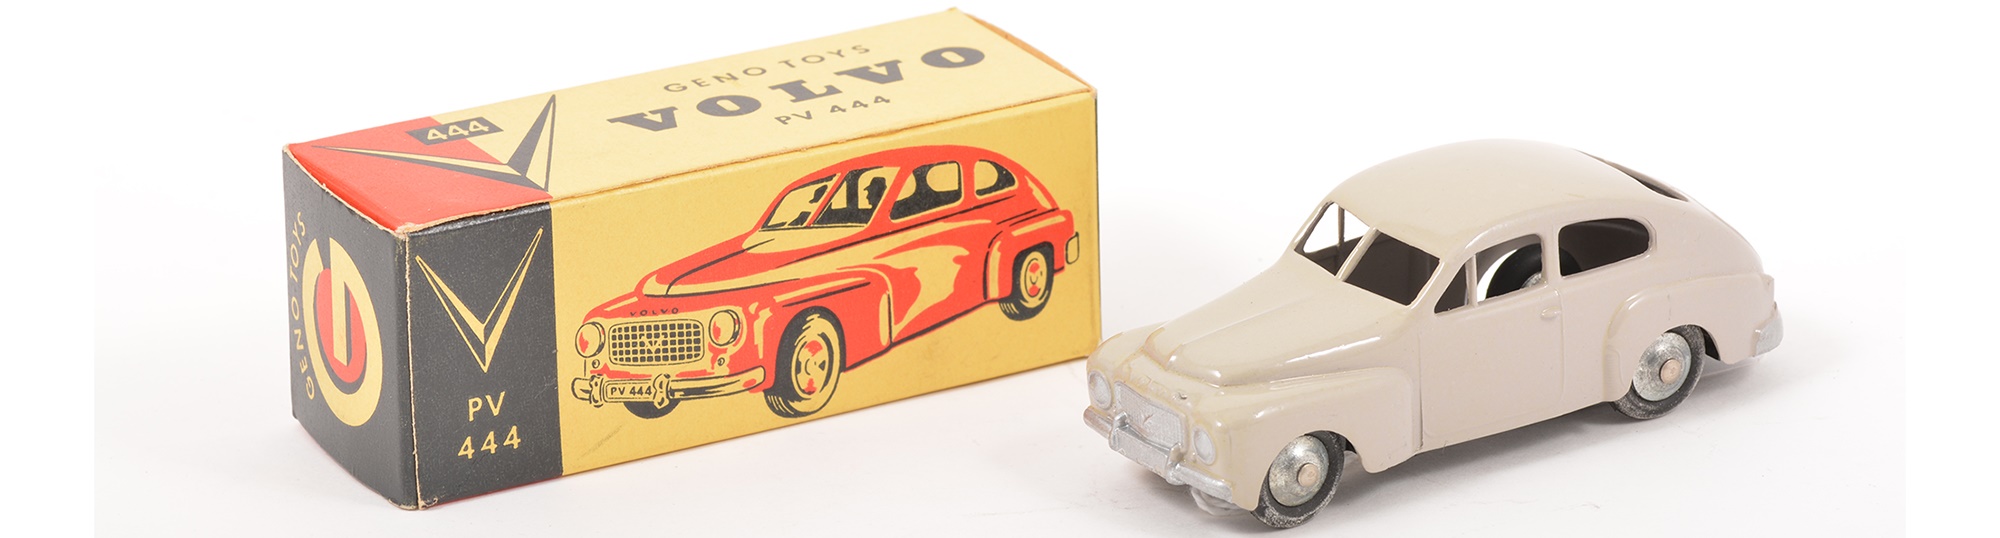 Diecast Volvo Geno toy